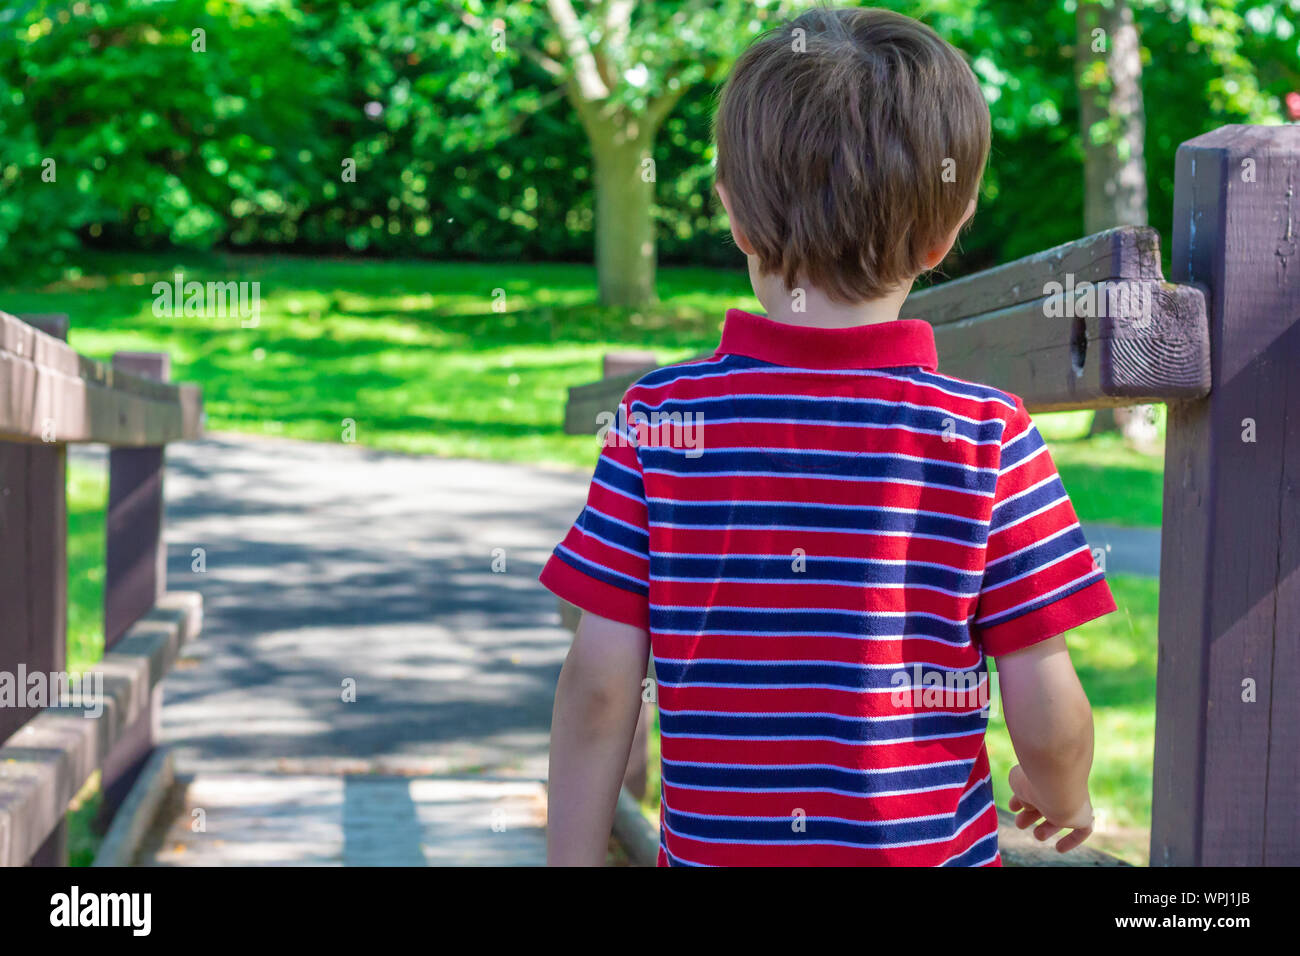 Un giovane ragazzo, circa 5 anni di età, indossa un rosso-blu striped Polo shirt come egli inizia a camminare lungo una rampa di legno in un parco pubblico. Foto Stock